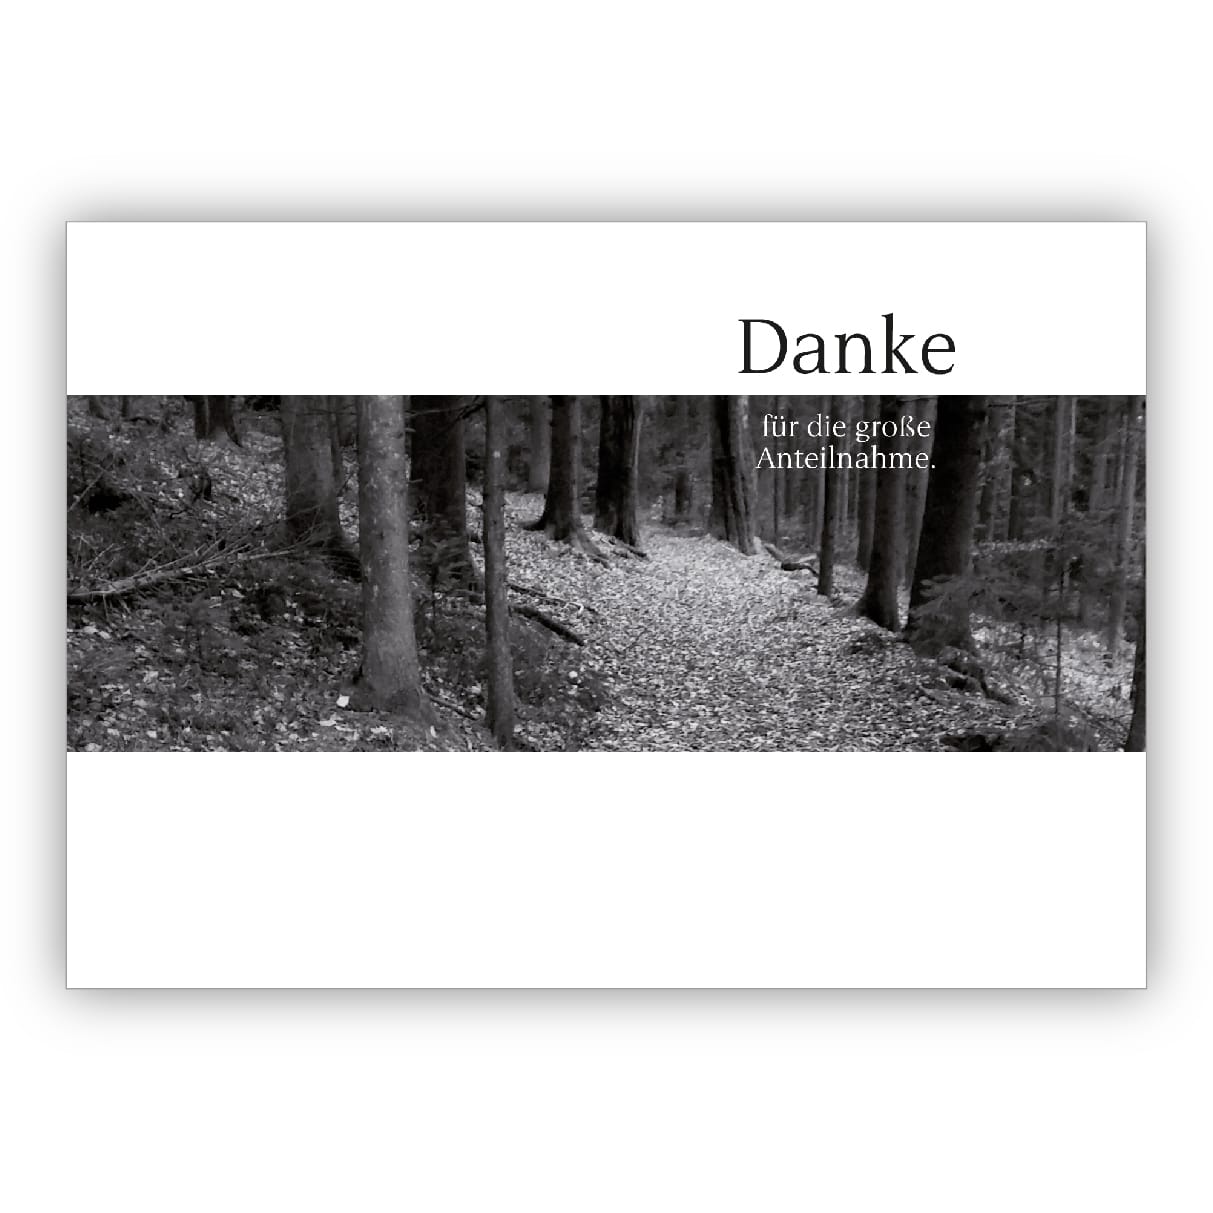 Edle moderne Trauer Dankeskarte in schwarz,weiß mit Waldweg